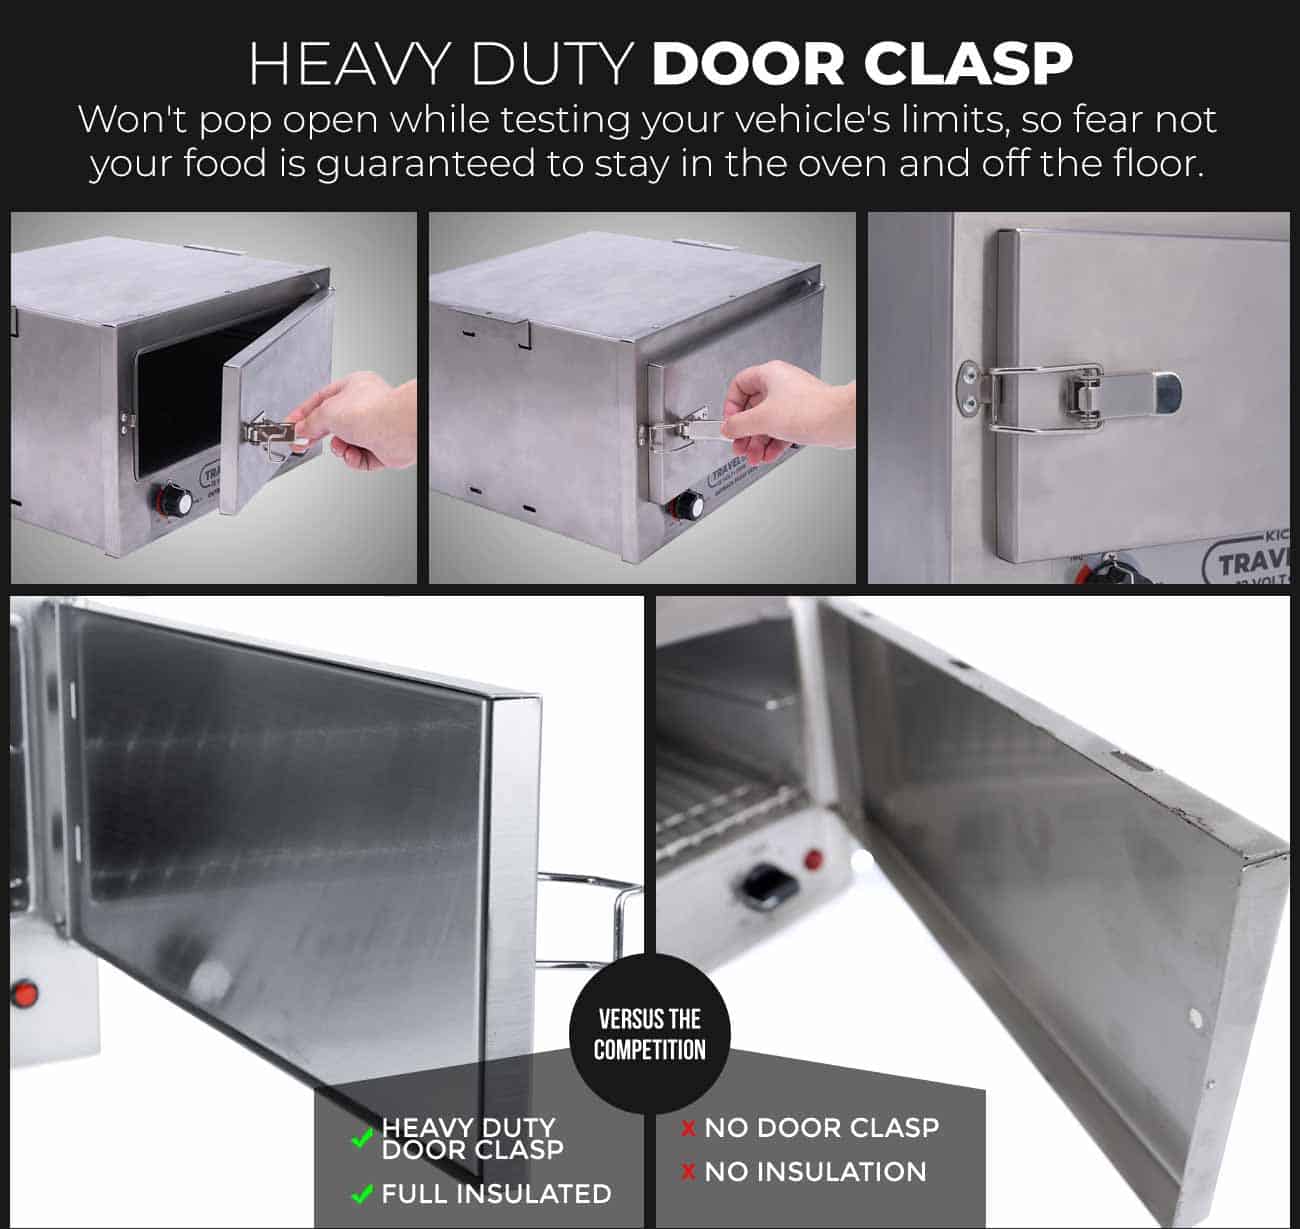 Heavy duty door clasp